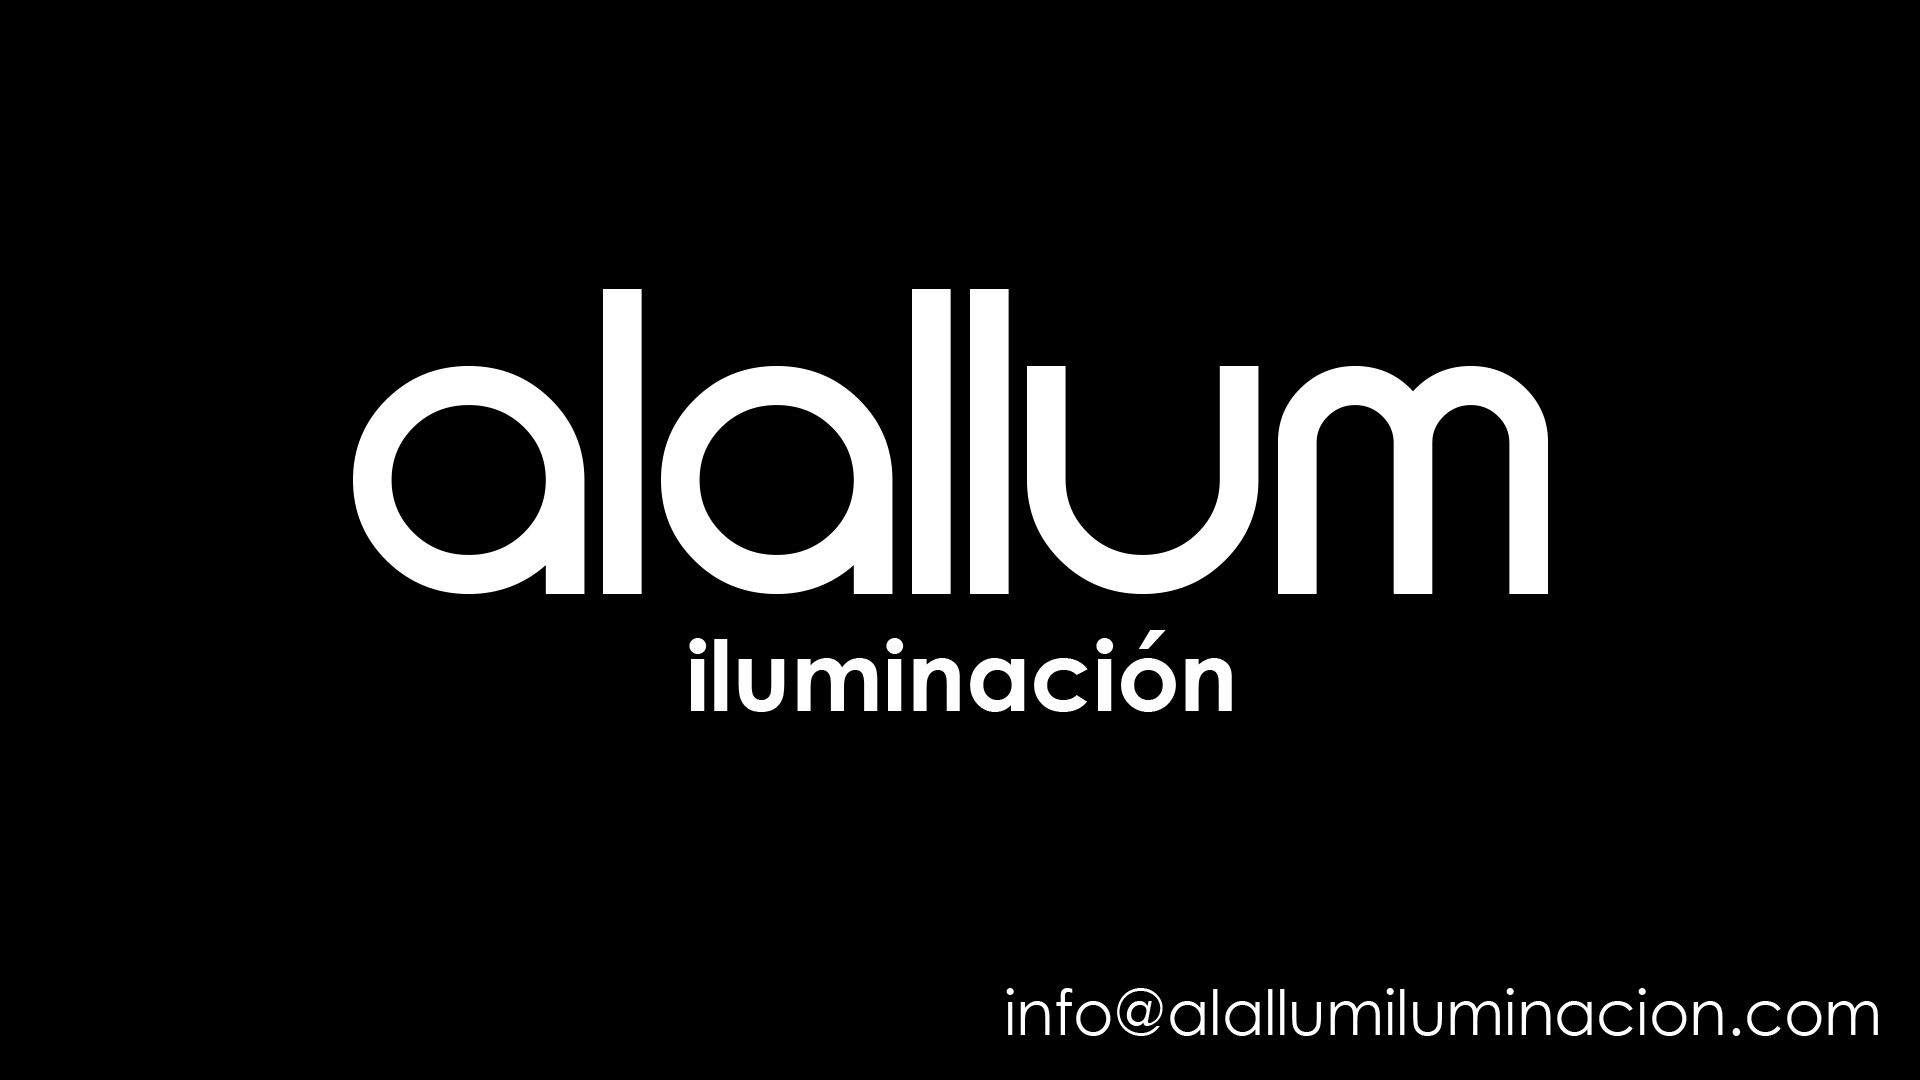 Alallum iluminación. Proyectos de iluminación profesionales en Alicante